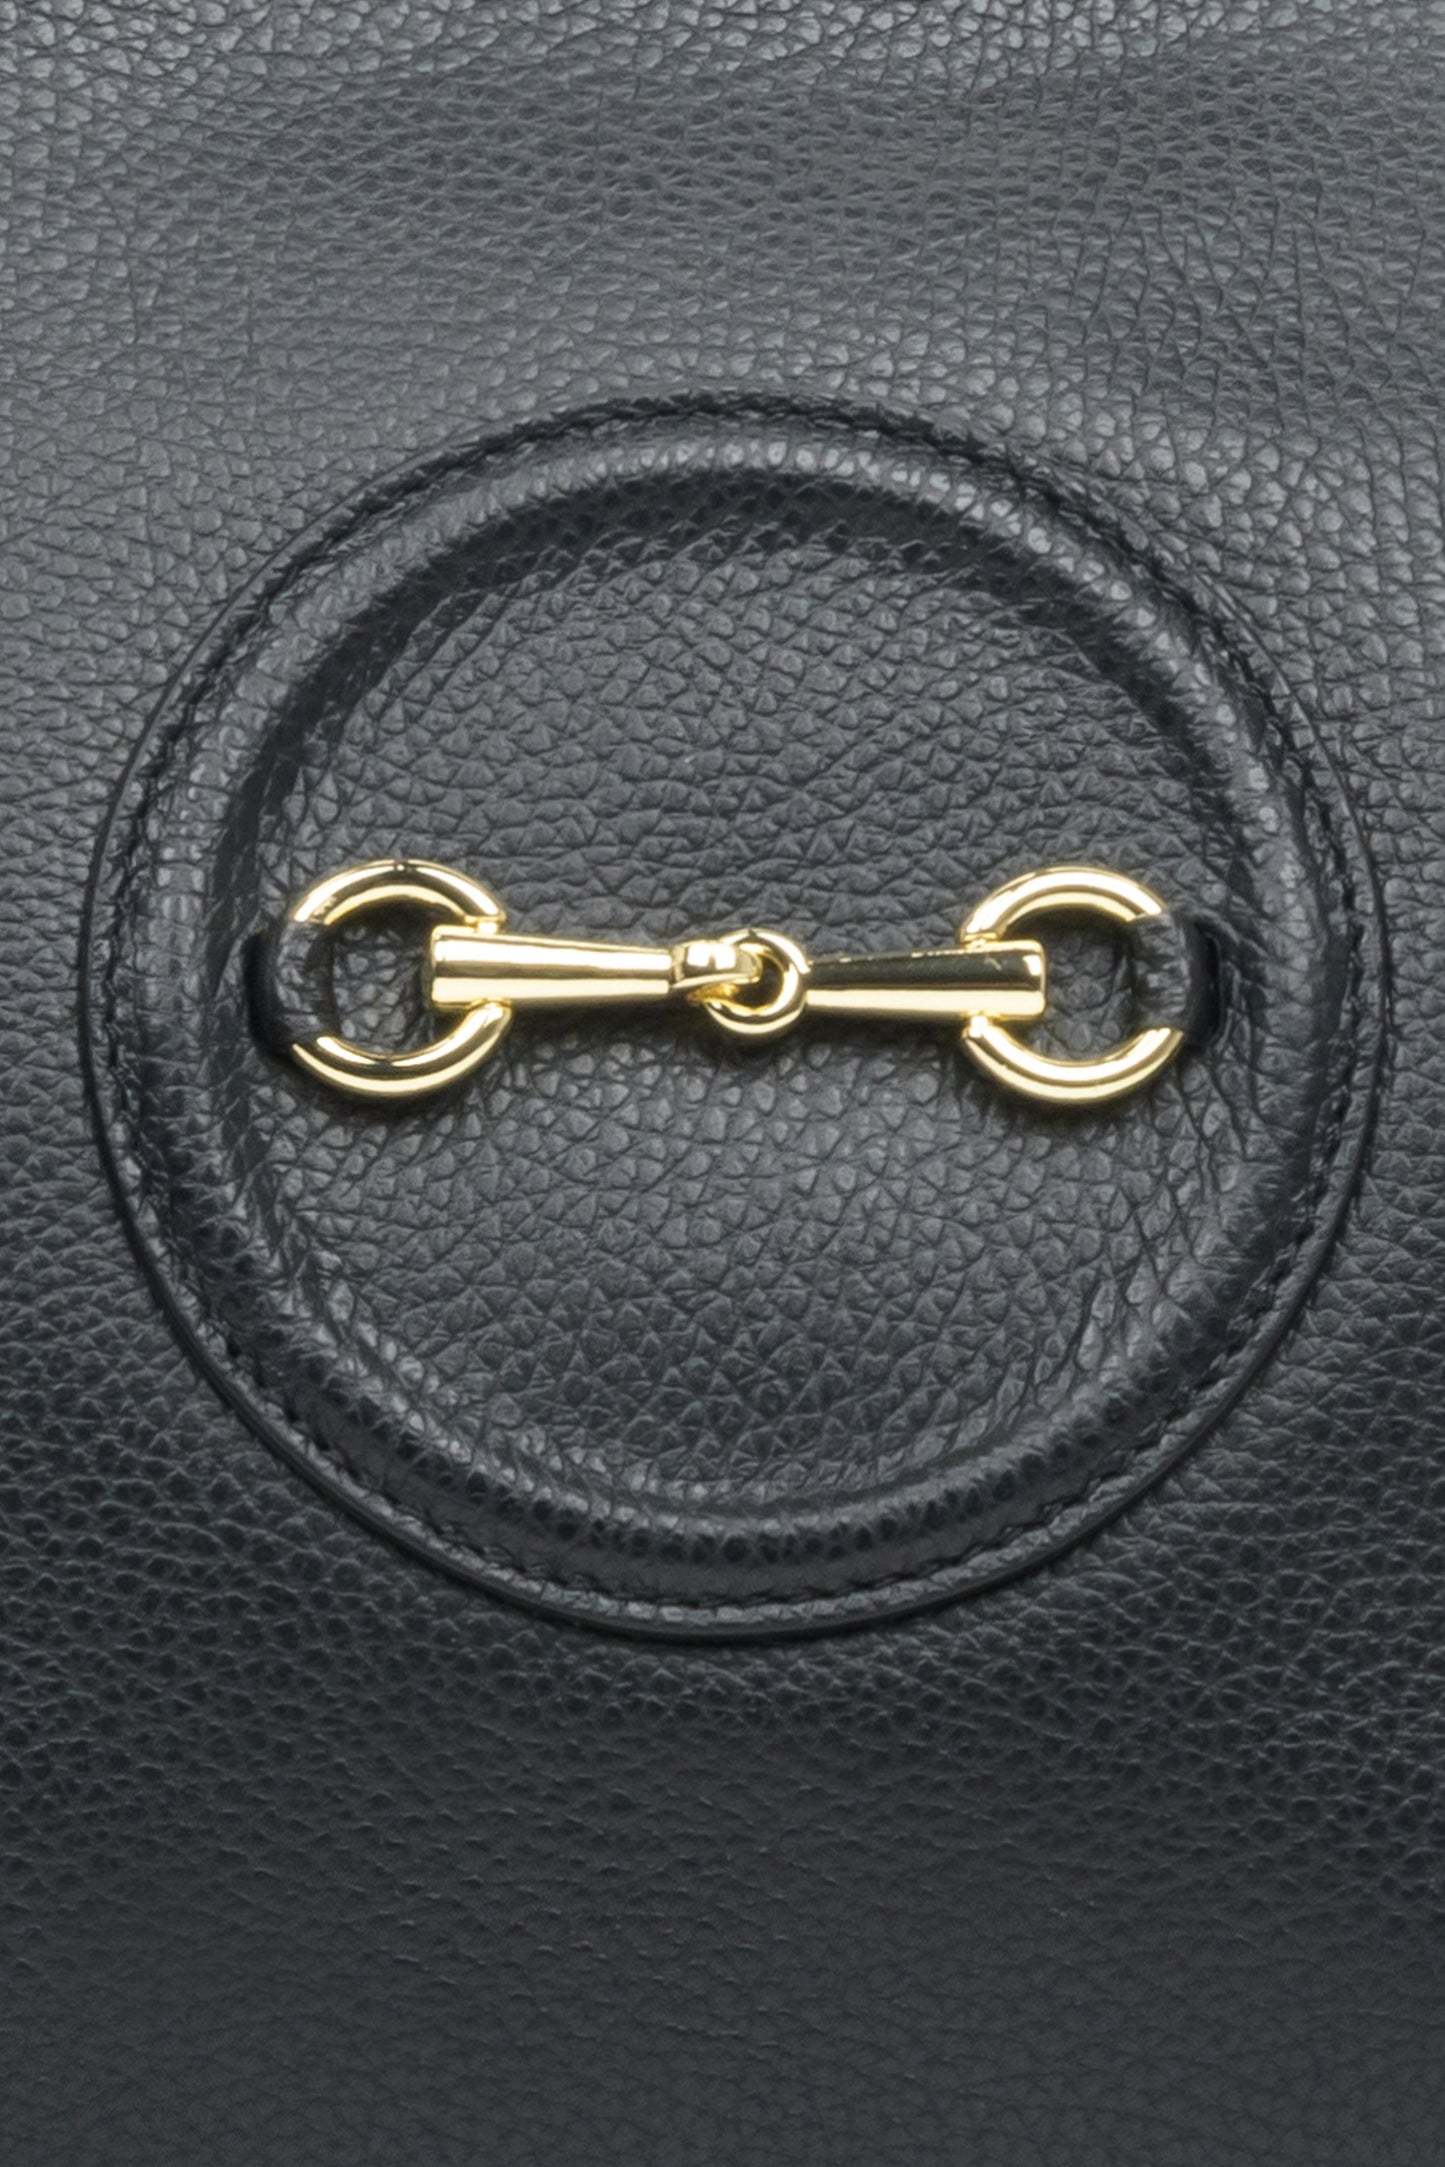 Pojemna, skórzana torebka damska w kolorze czarnym marki Estro ze złotymi okuciami - zbliżenie na detale.